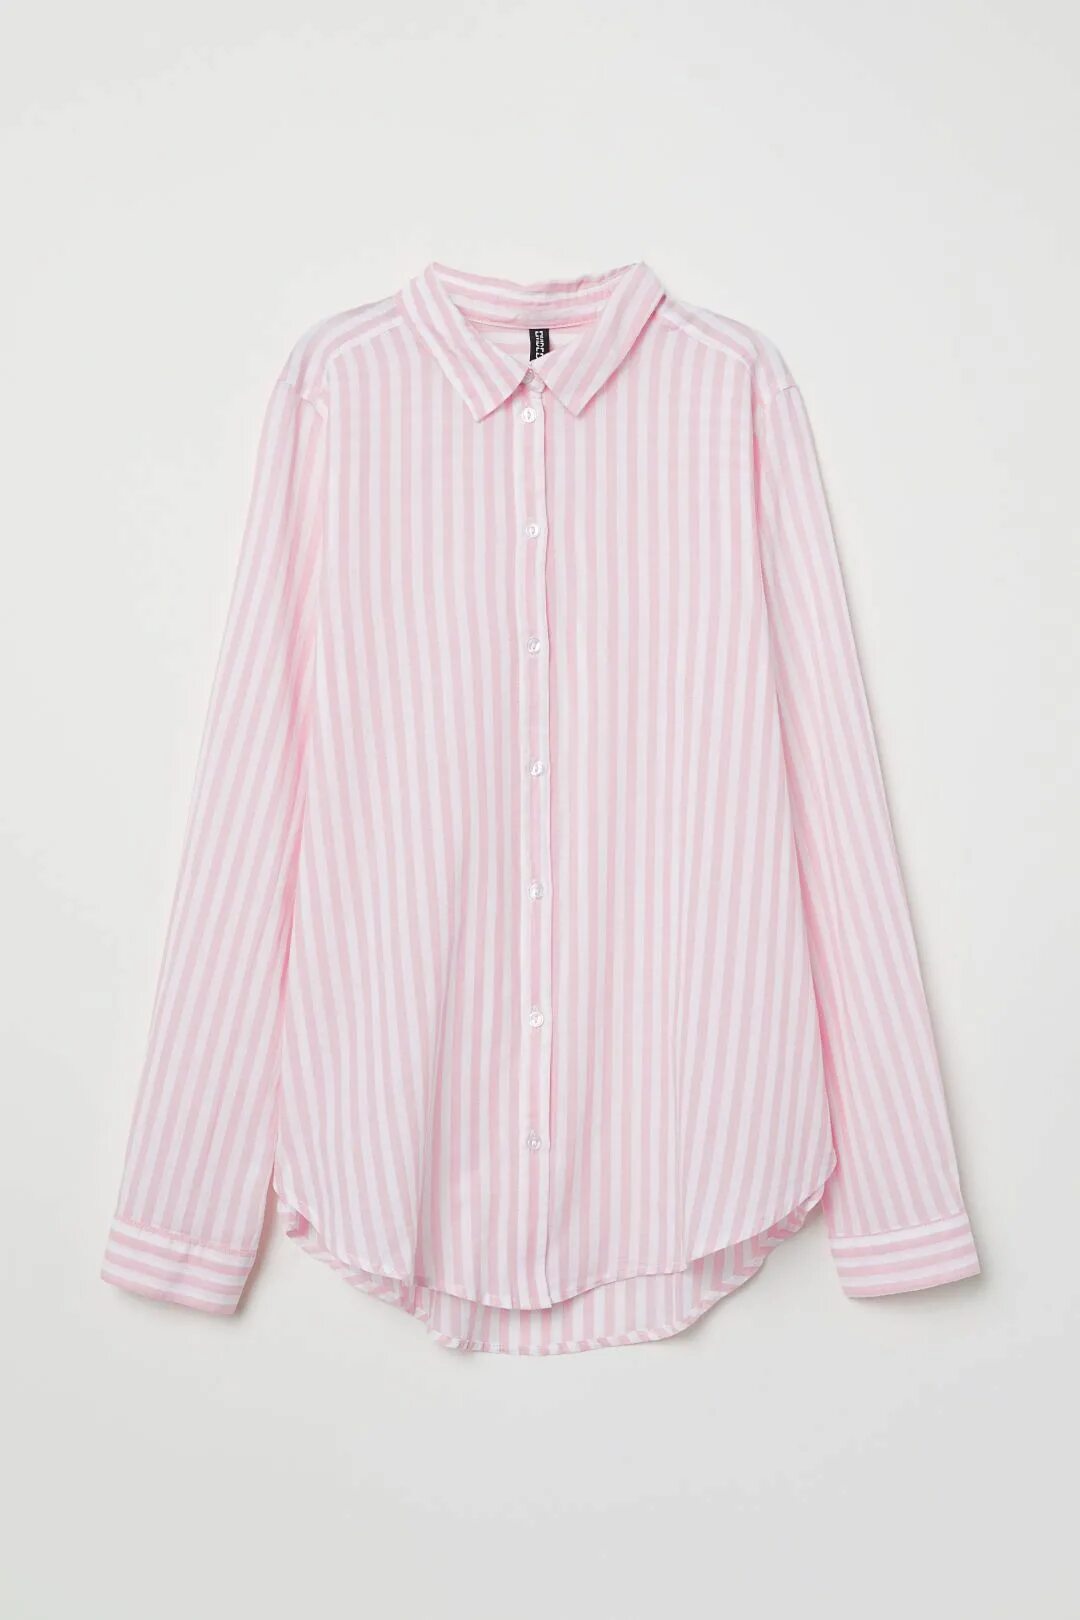 Розовая рубашка в полоску. H M divided рубашка женская. Рубашка в розовую полоску женская. Белая рубашка в розовую полоску.